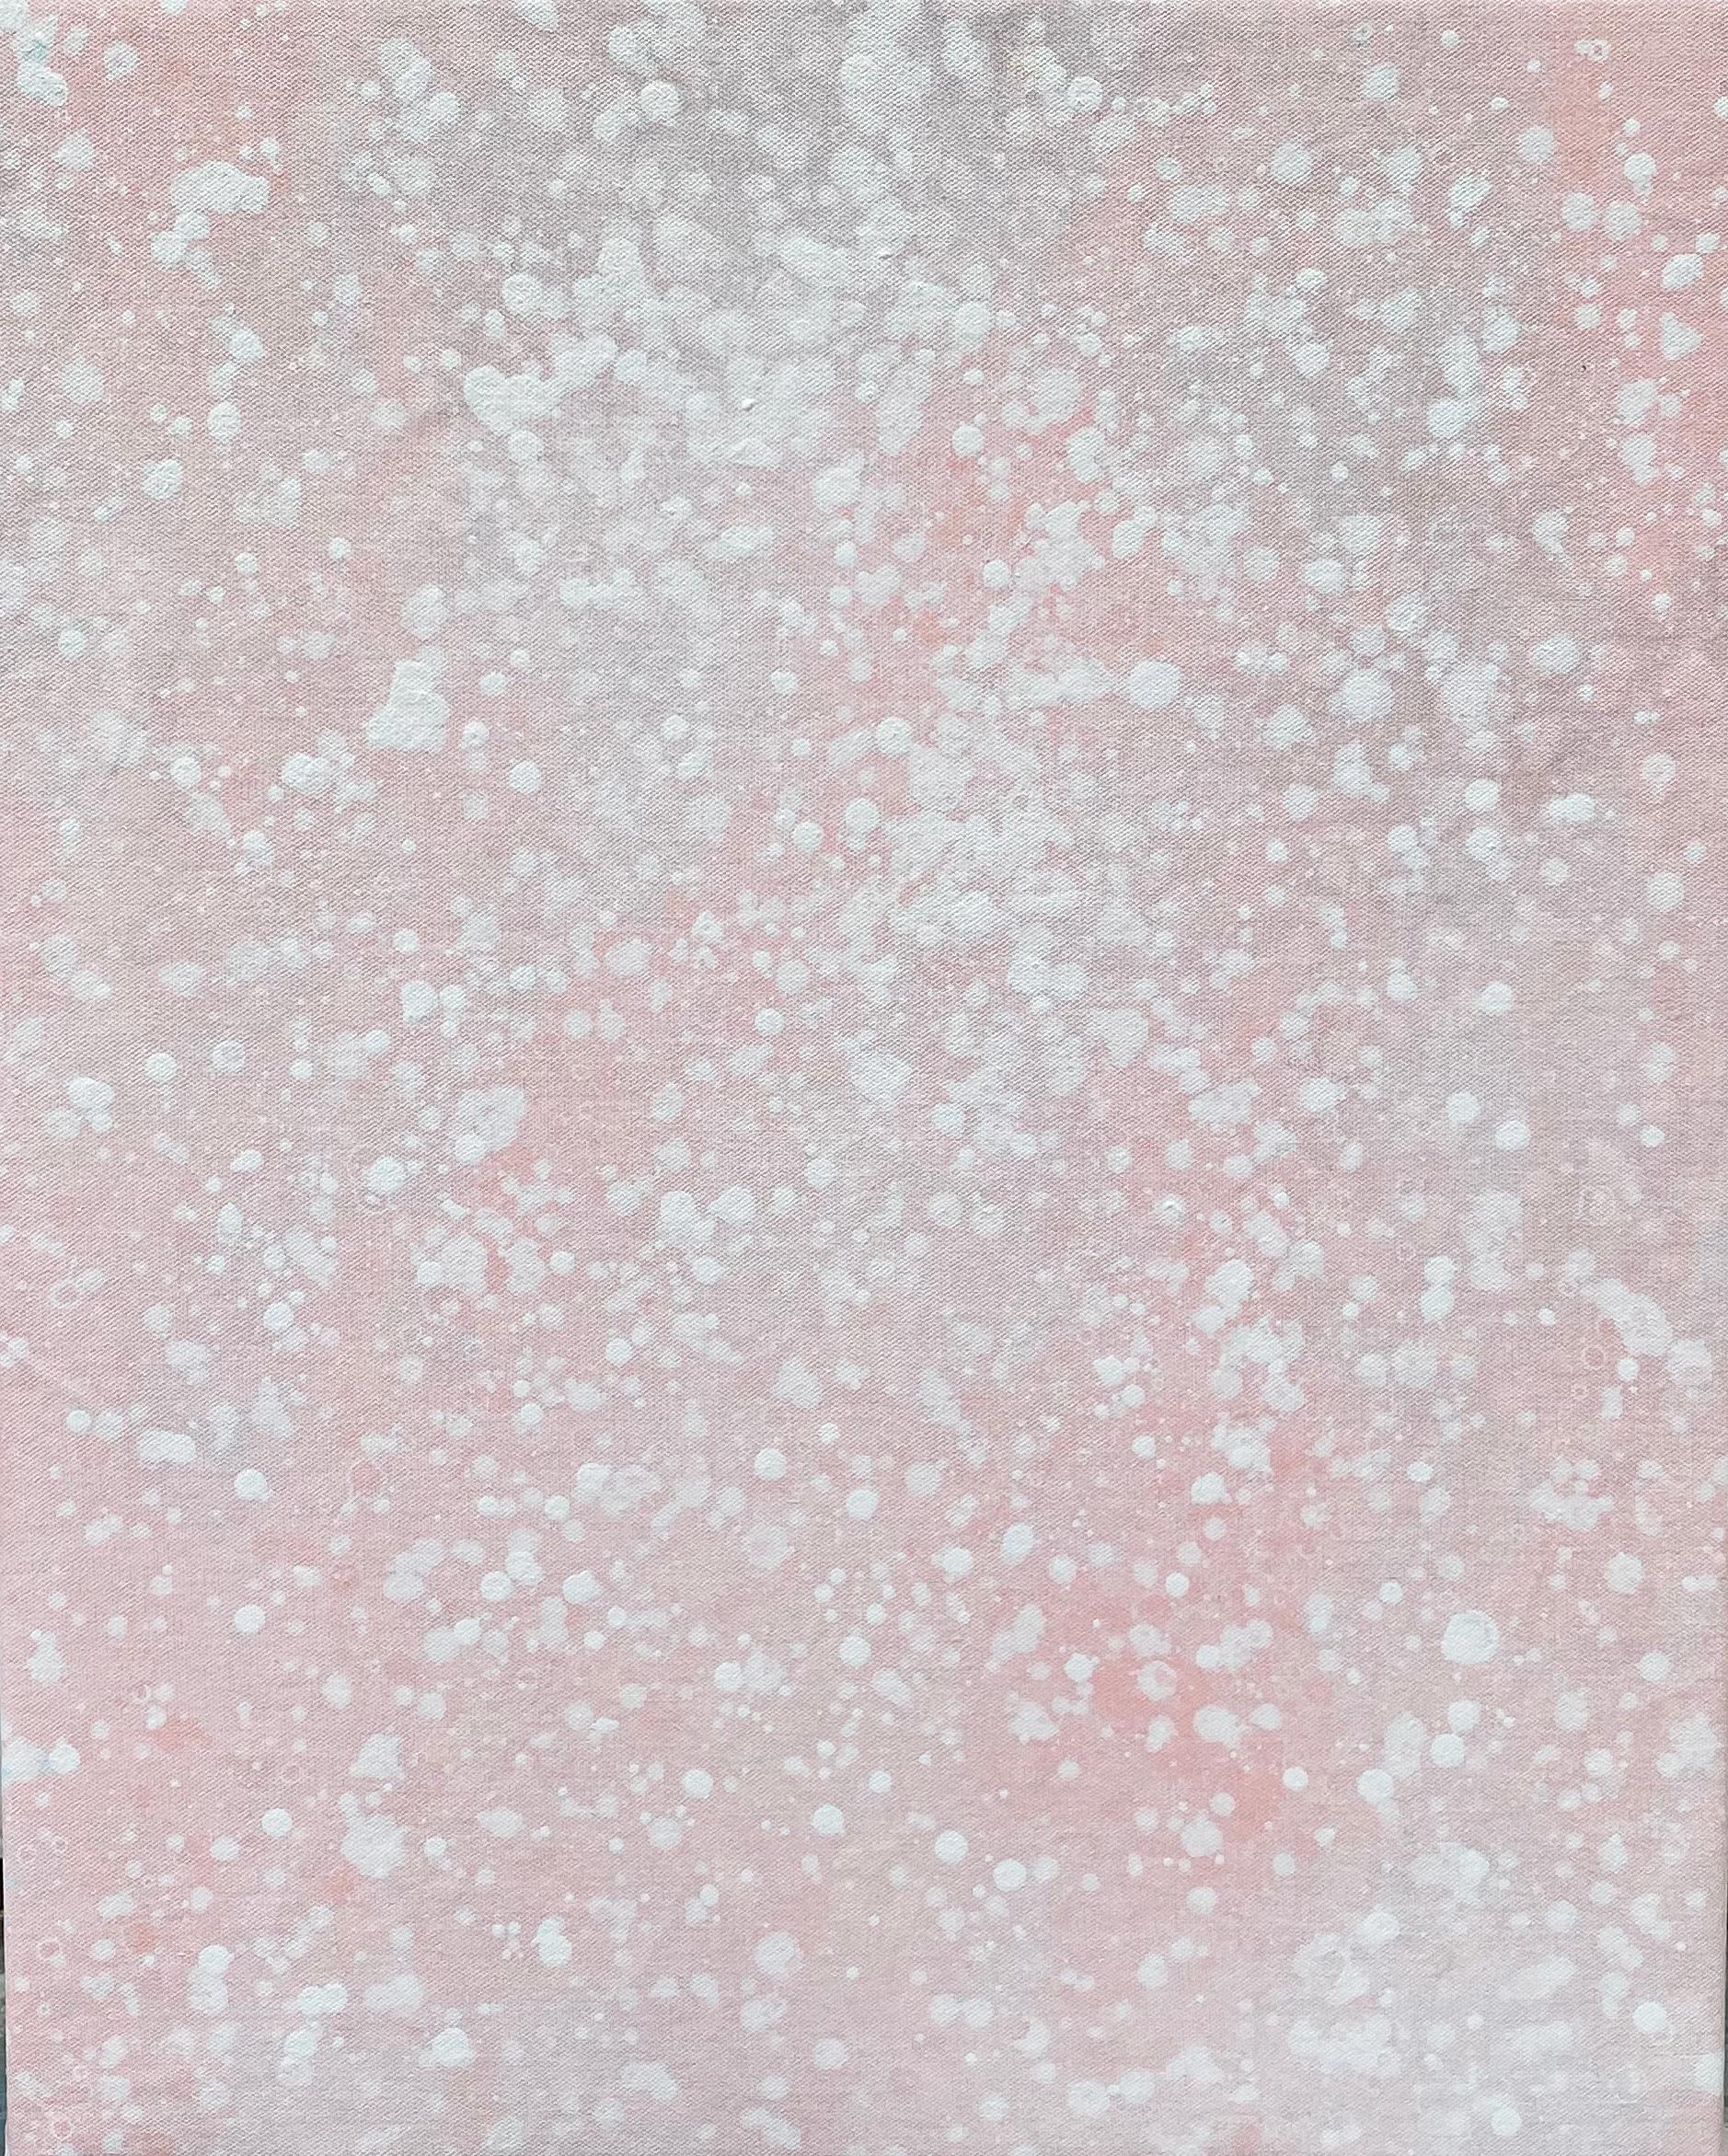 Seine Schneewittchen-Pastell hellrosa Punkt abstrakte minimalistische expressionistische moderne Malerei